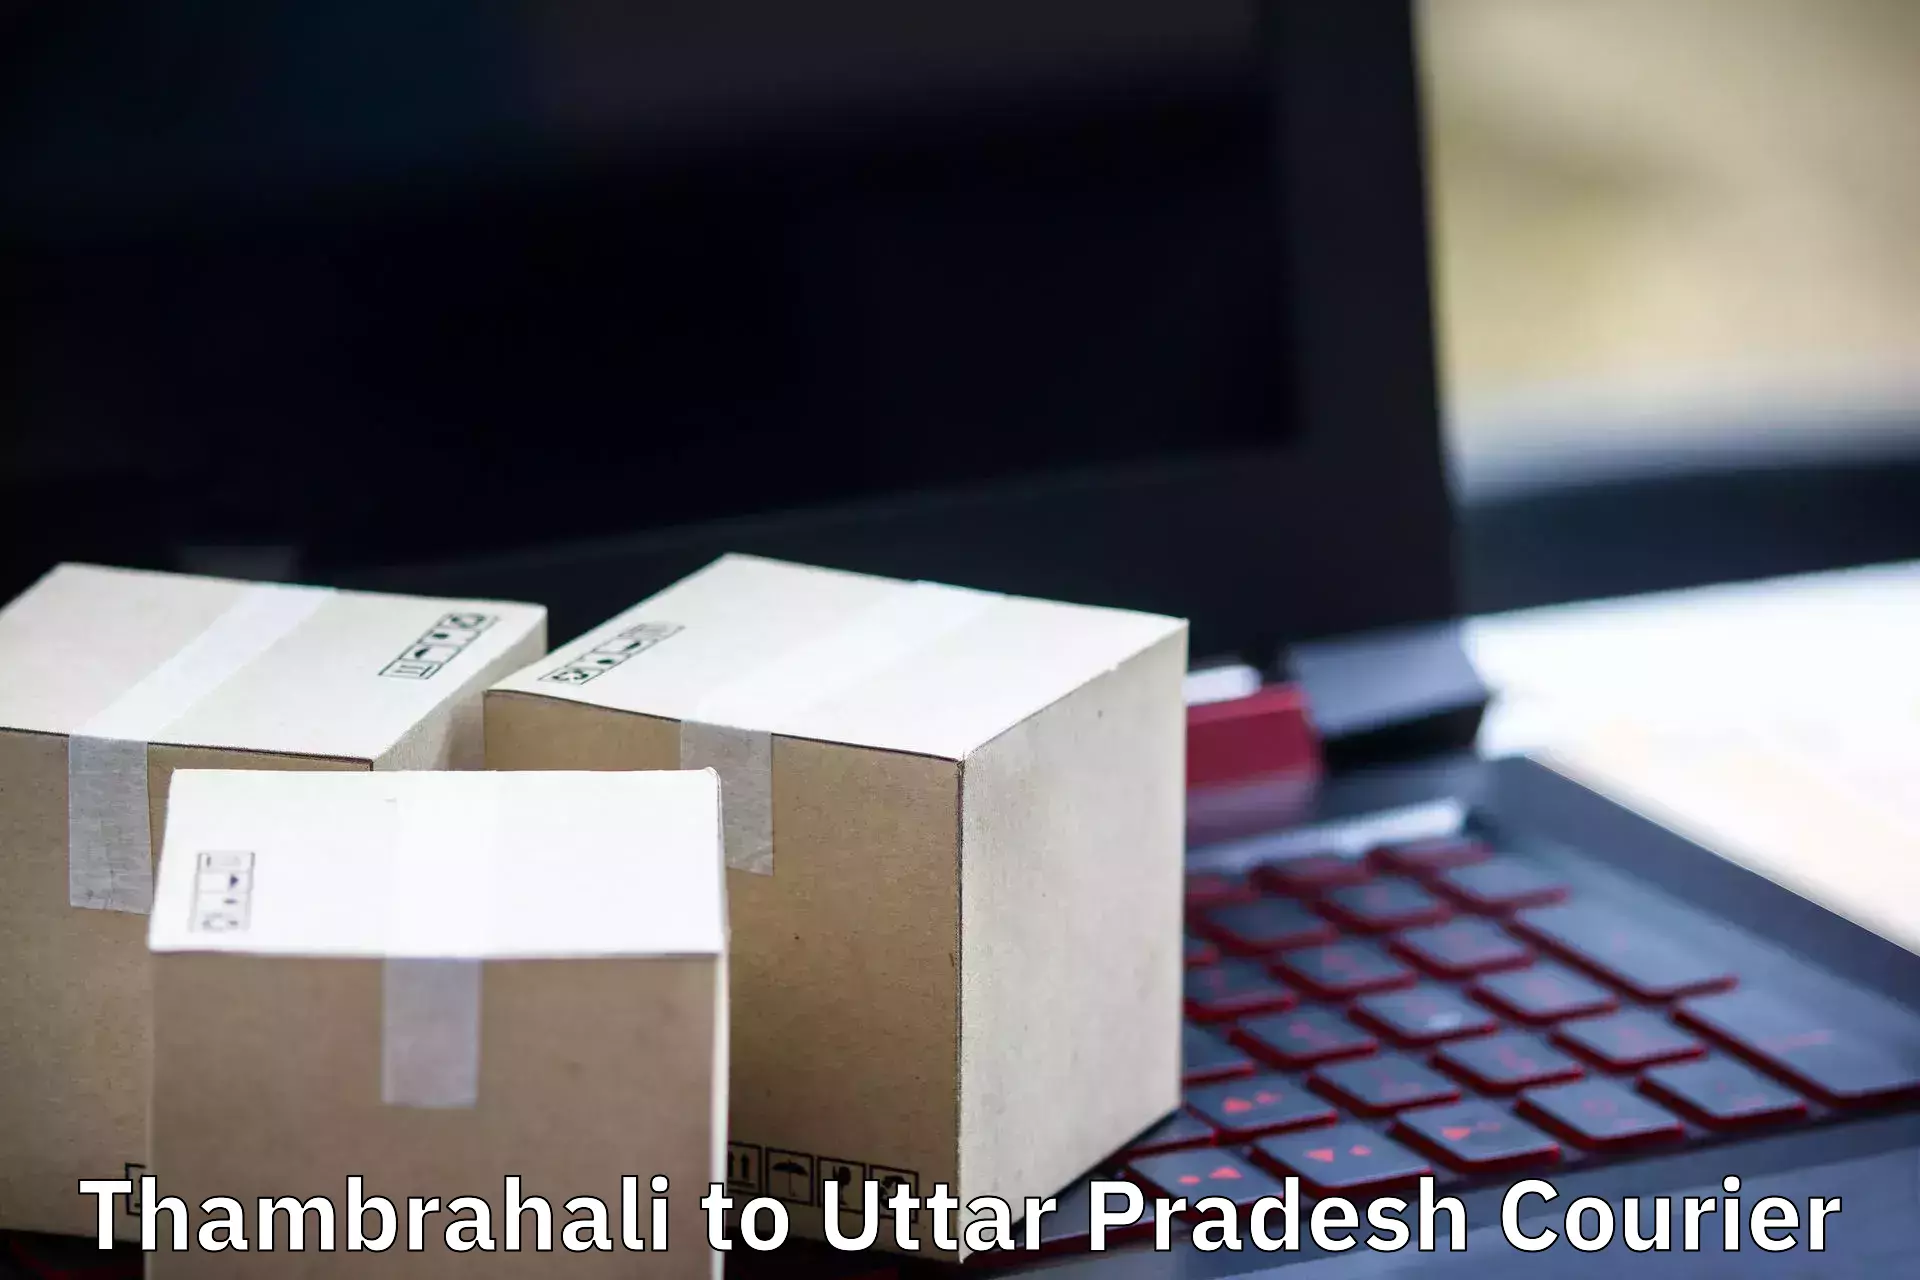 Moving and handling services Thambrahali to Rudhauli